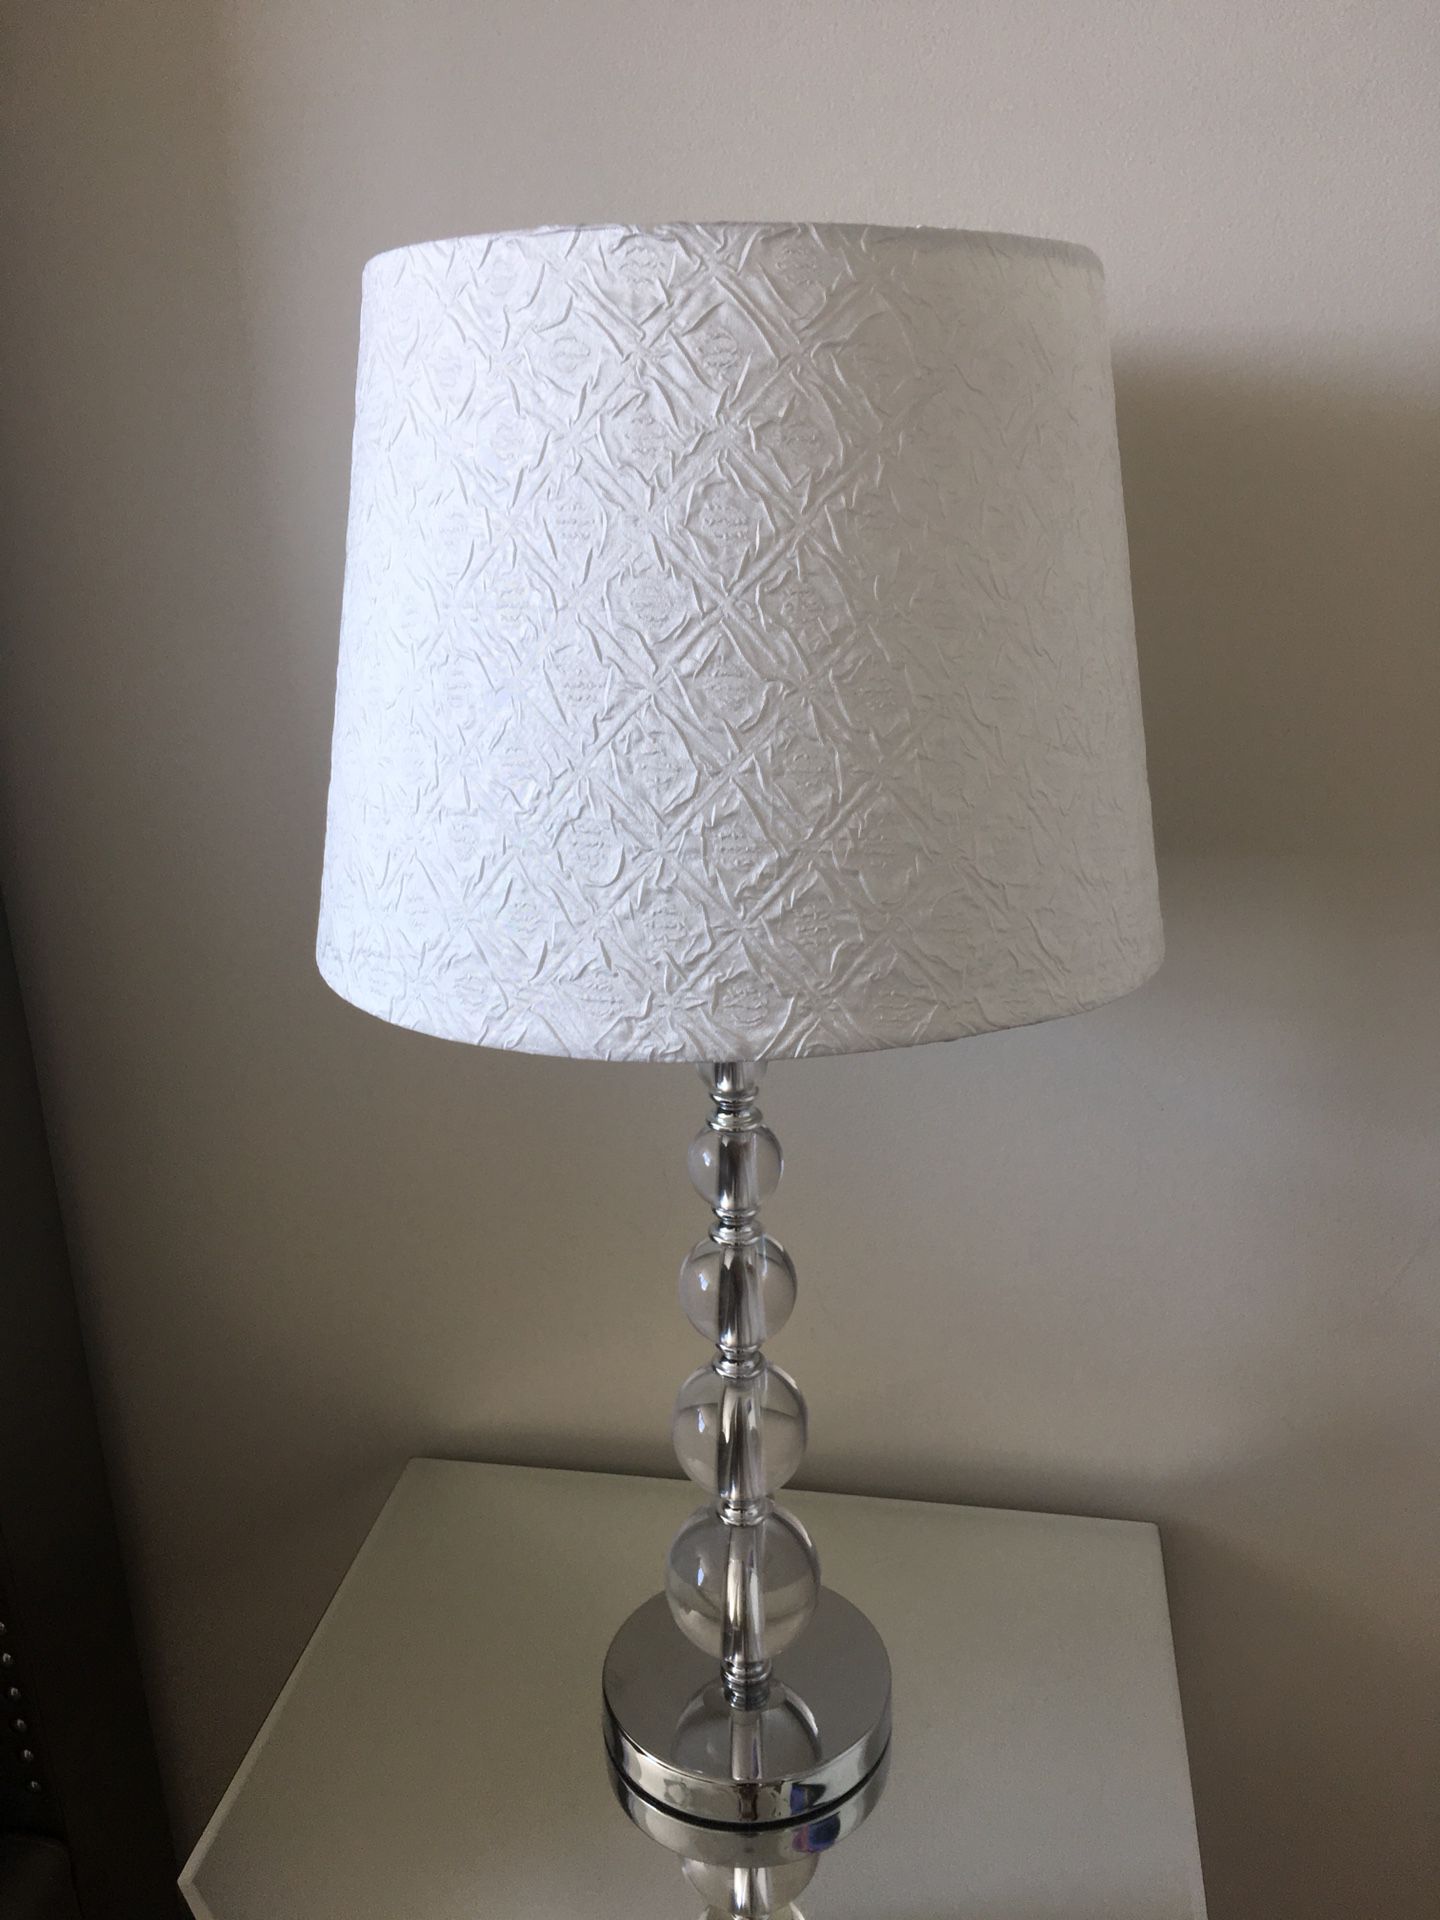 Modern lamp & lamp shade